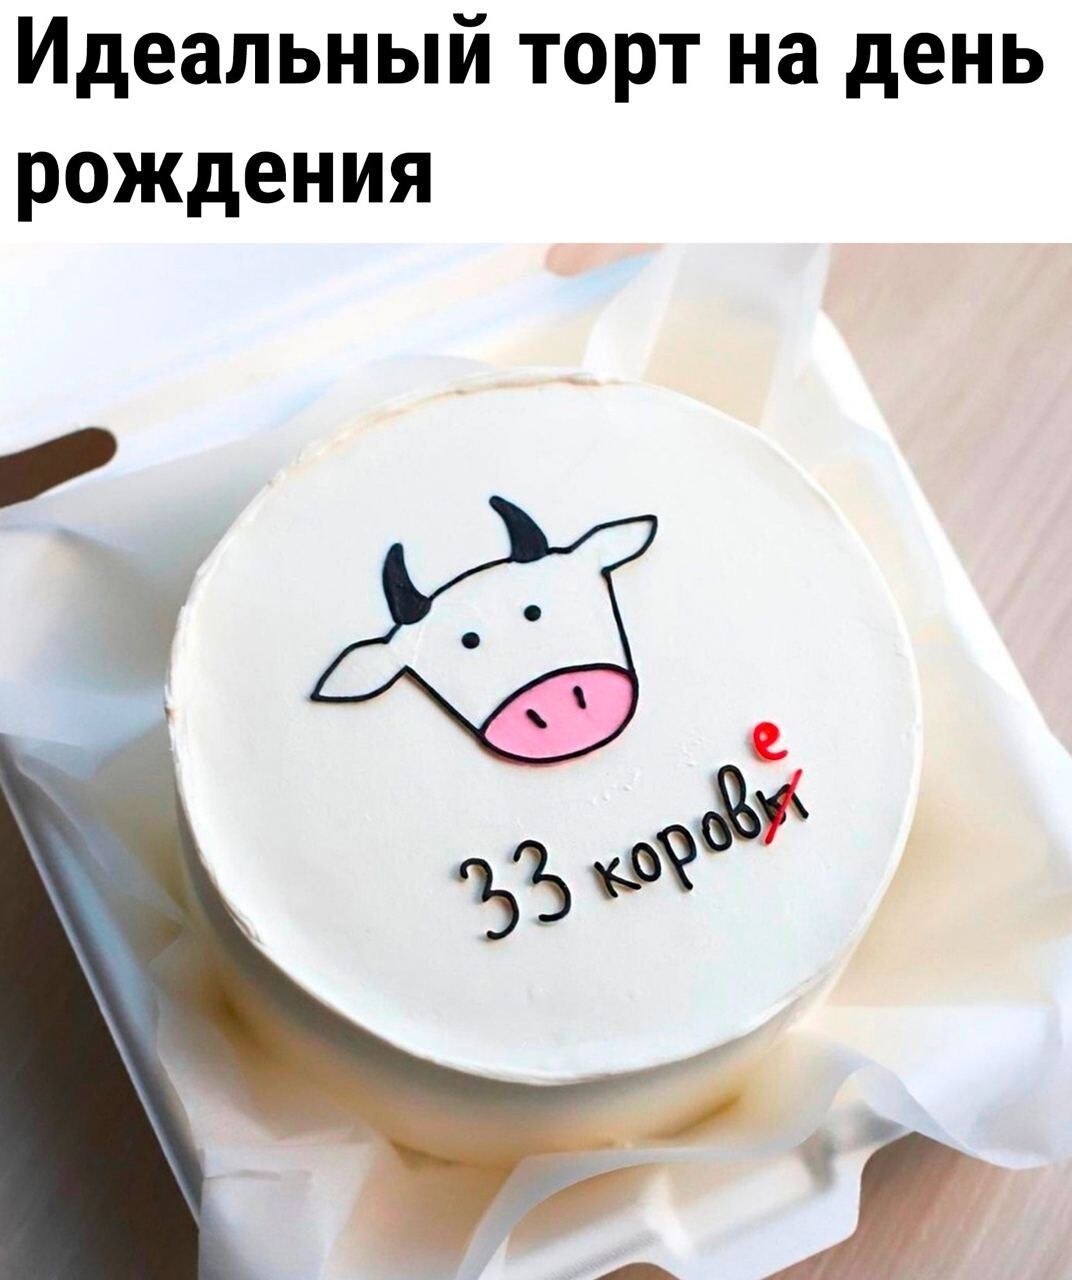 Идеальный торт на день рождения ЪЪ